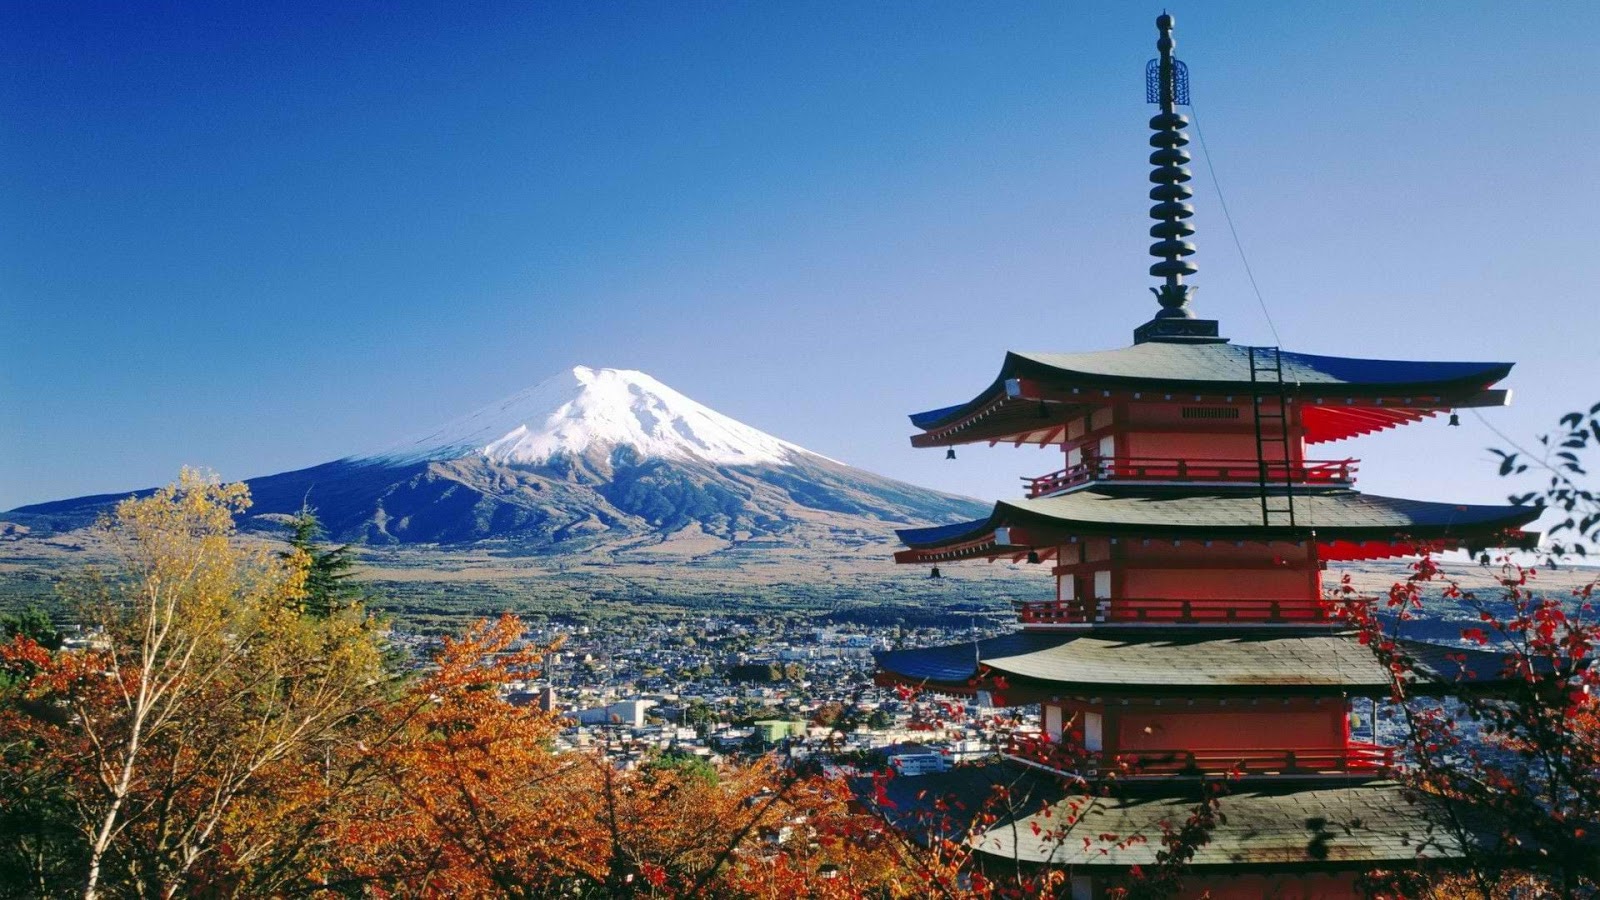 Wallpaper Gunung Fuji Di Jepang Tapis Berseri